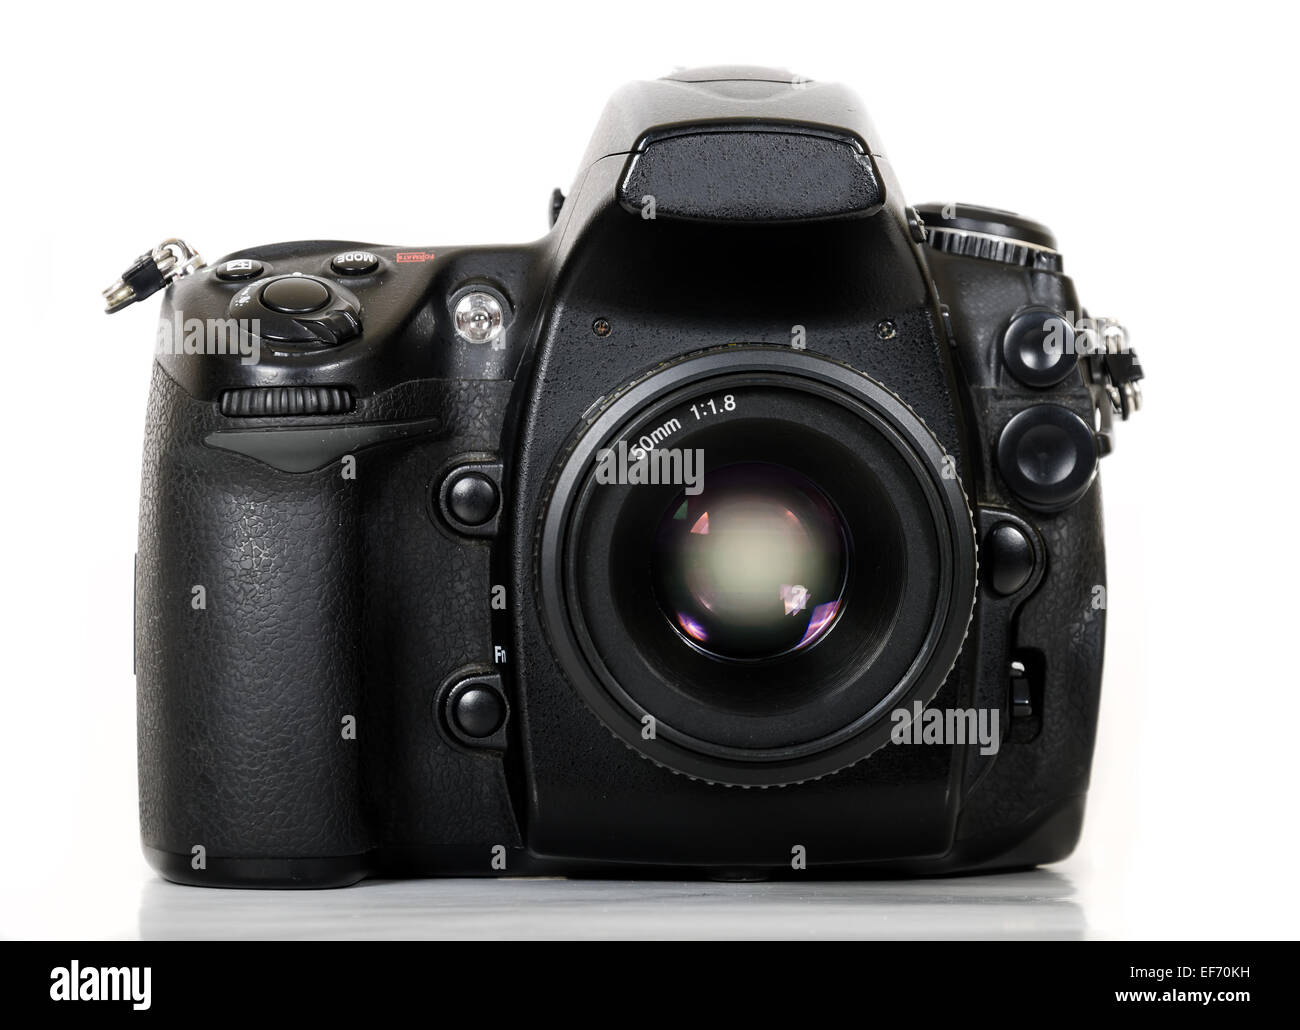 Professional digital black camera isolated on white background Stock Photo